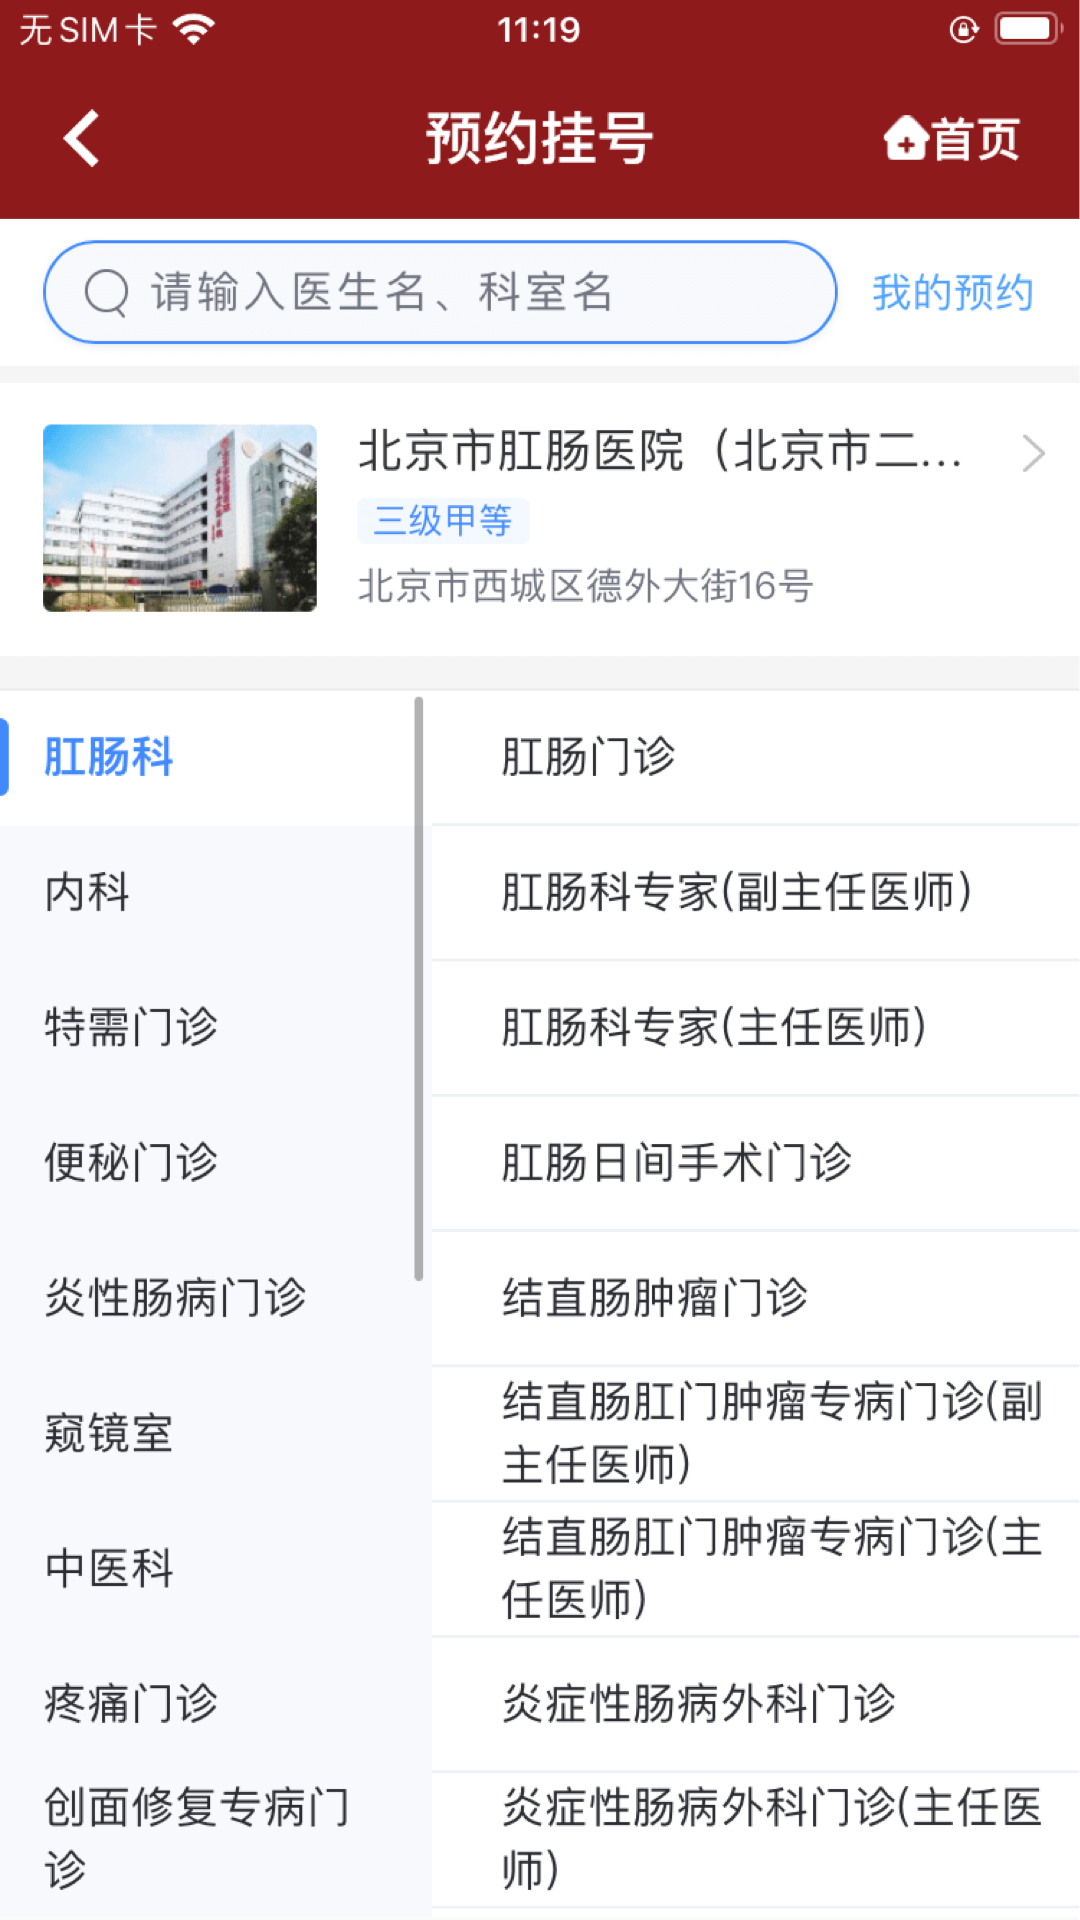 北京市肛肠医院v1.0.0截图1